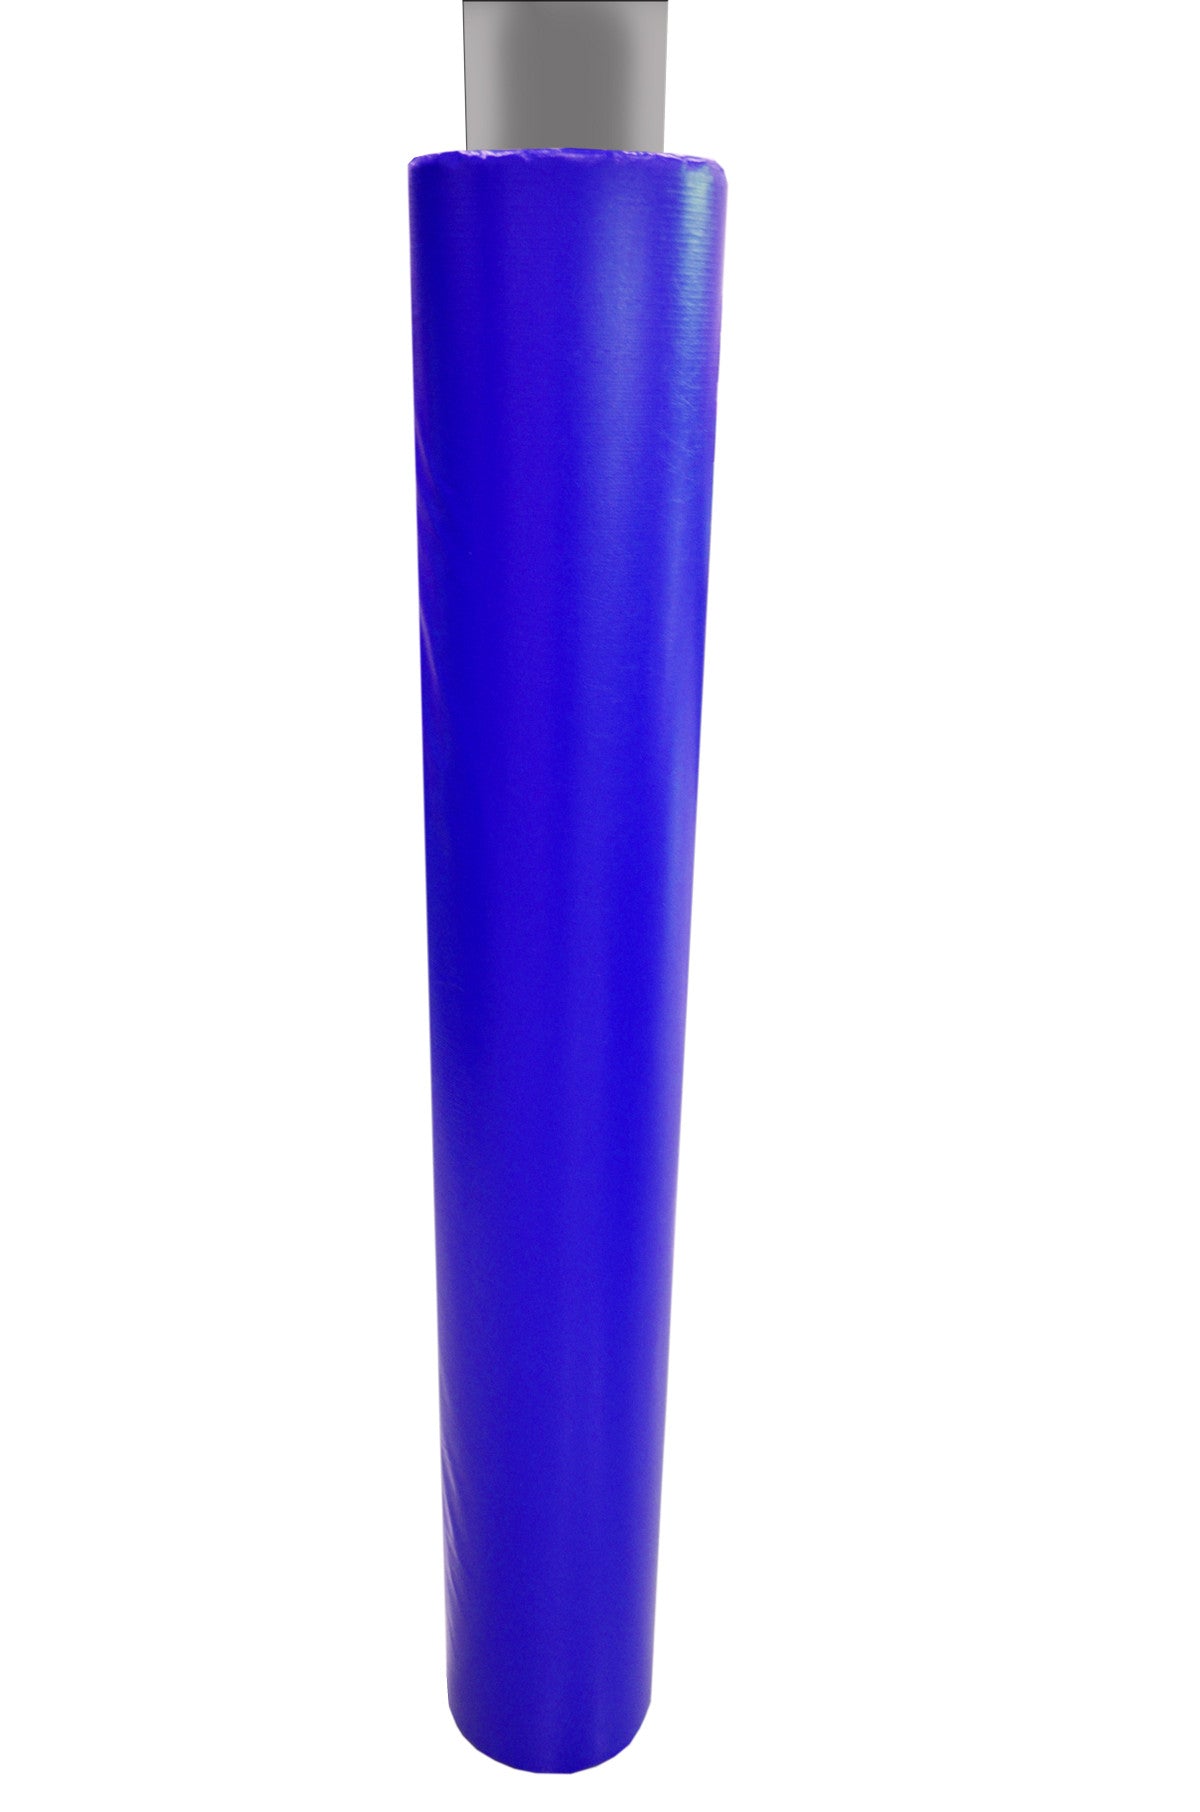 6' Tall Pole Pad, 10" Diameter